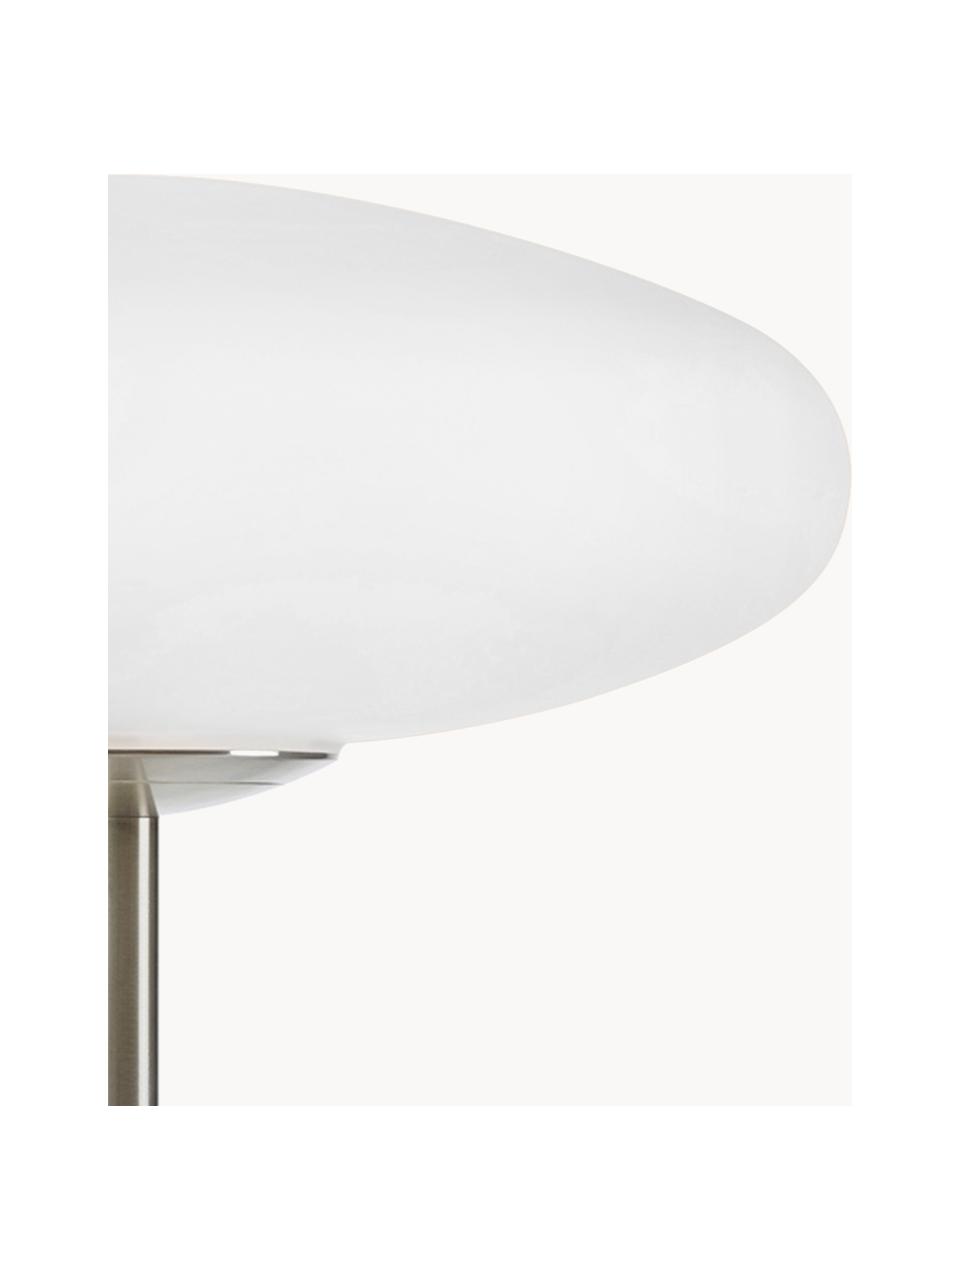 Lámpara de mesa Locus, Pantalla: vidrio, Estructura: acero cepillado, Cable: plástico, Blanco crema, plateado, Ø 29 x Al 40 cm